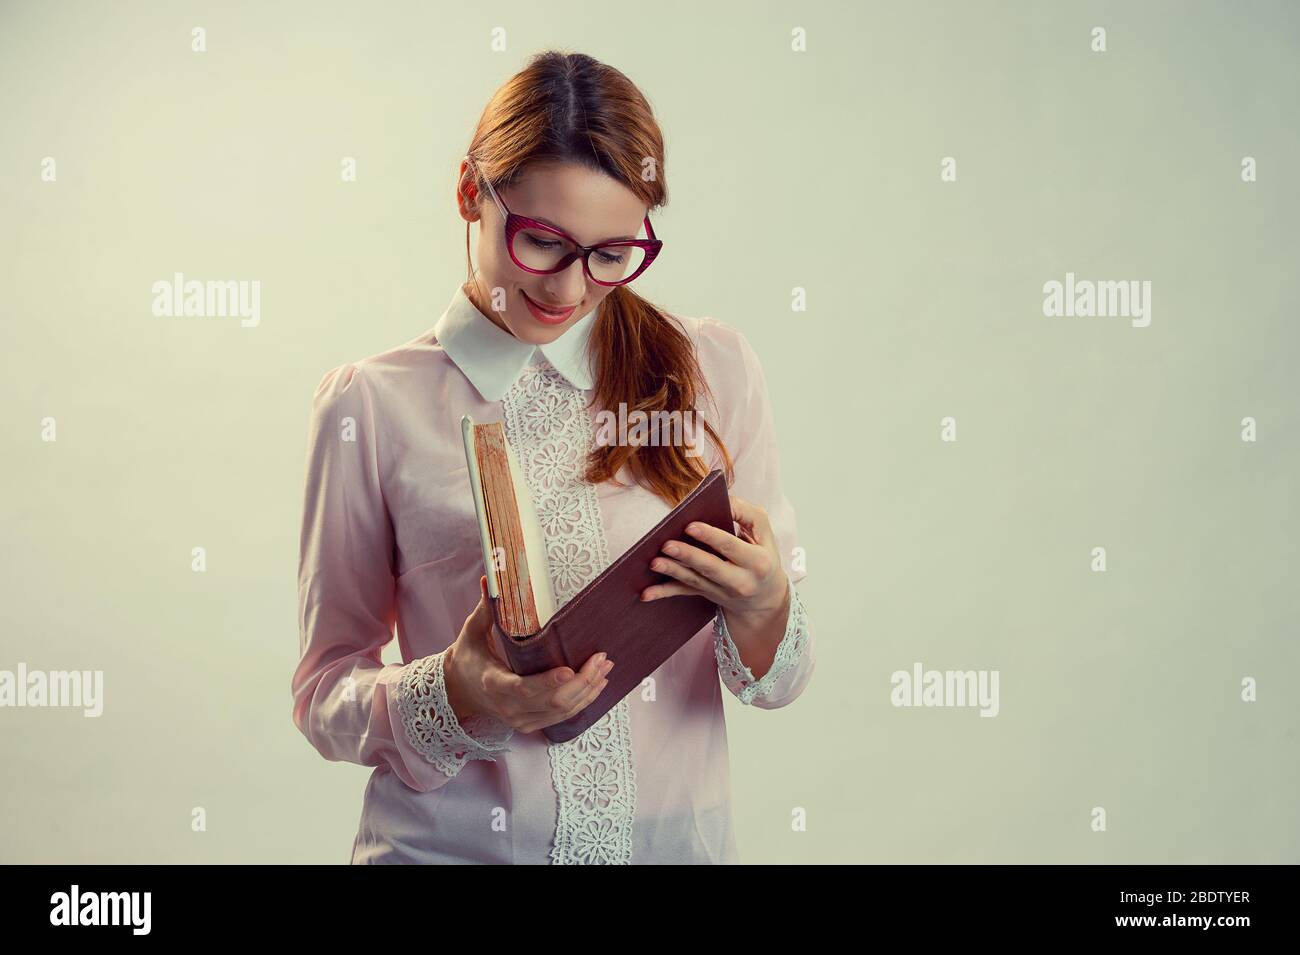 Eine junge hübsche Frau zwischen 30 und 40 Jahren mit einem alten Buch. Freier Platz für Textanzeigen Stockfoto